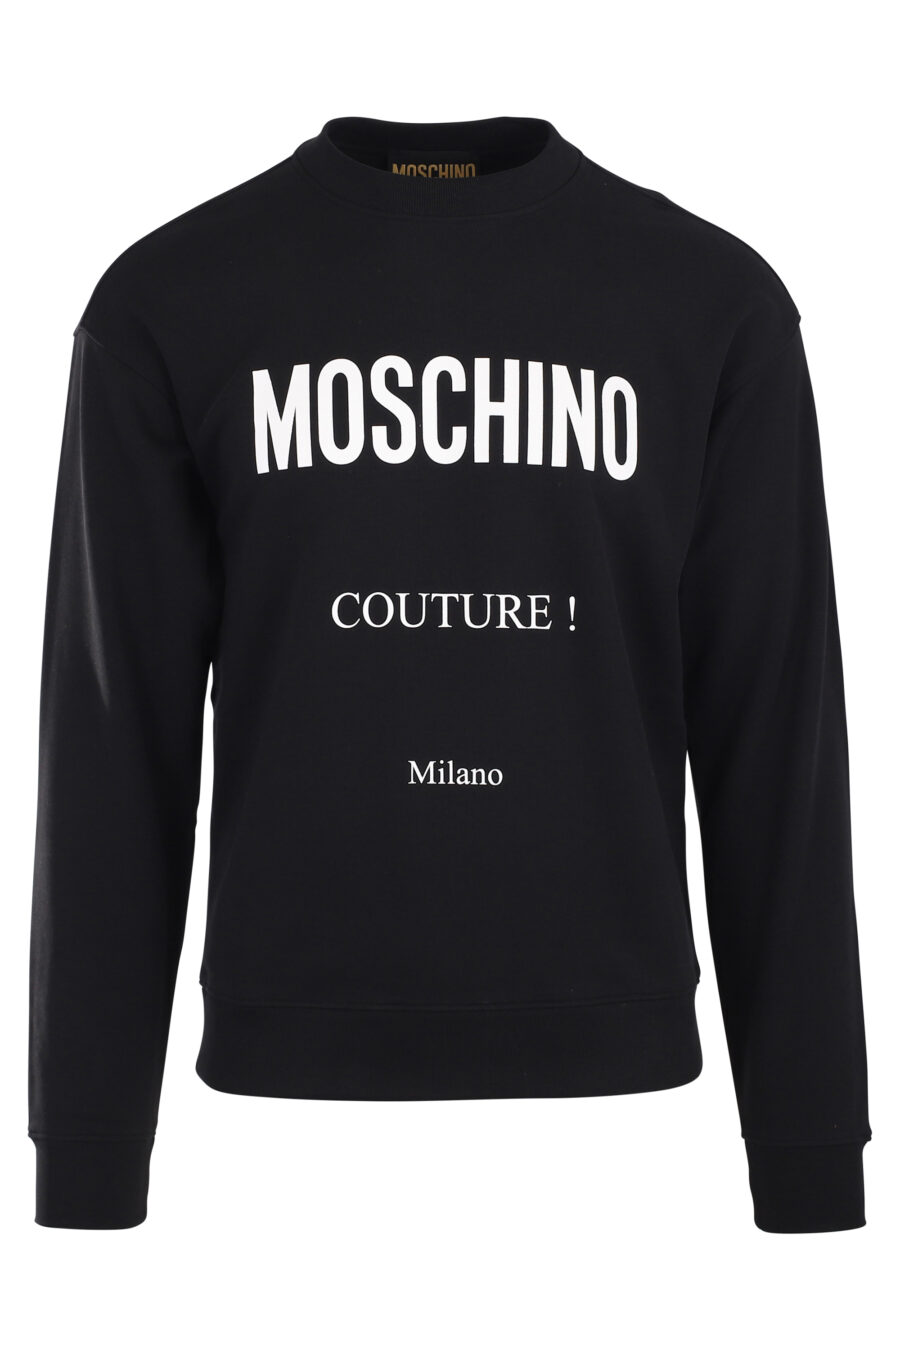 Moschino - Sudadera negra con capucha y logo en franja blanco - BLS Fashion